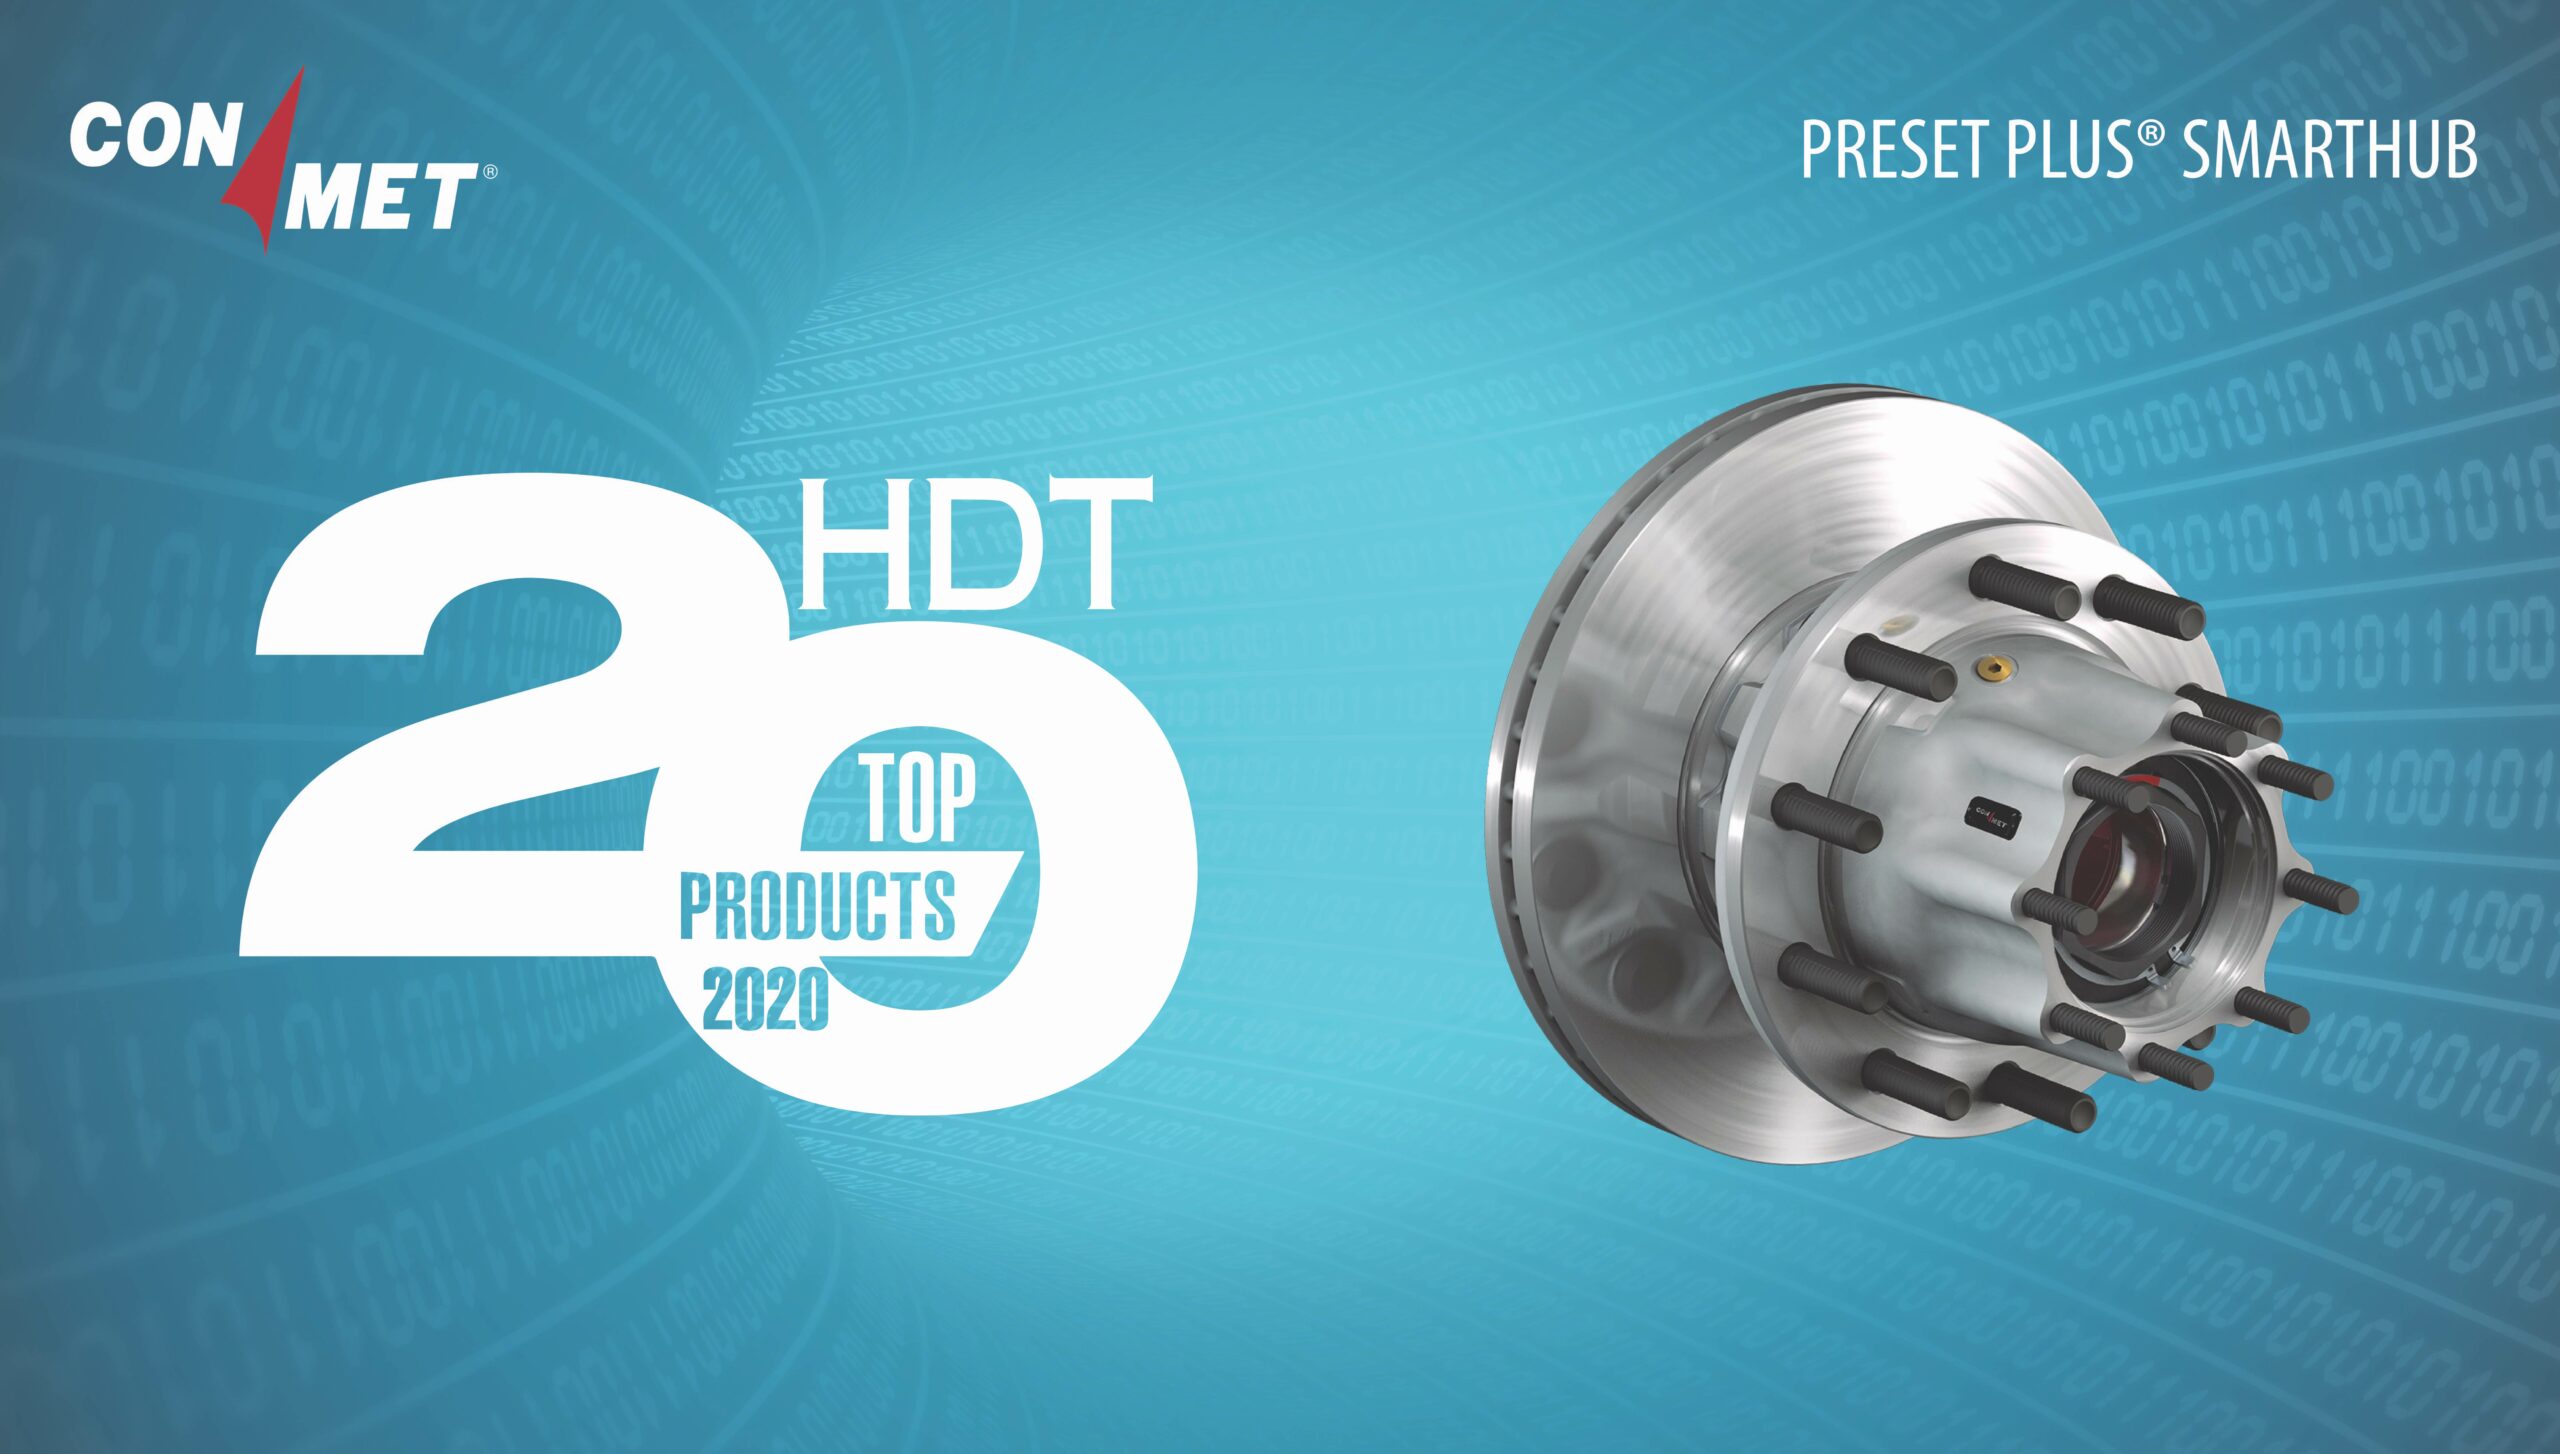 PreSet Plus® SmartHub™ entre los 20 mejores productos de HDT de 2020